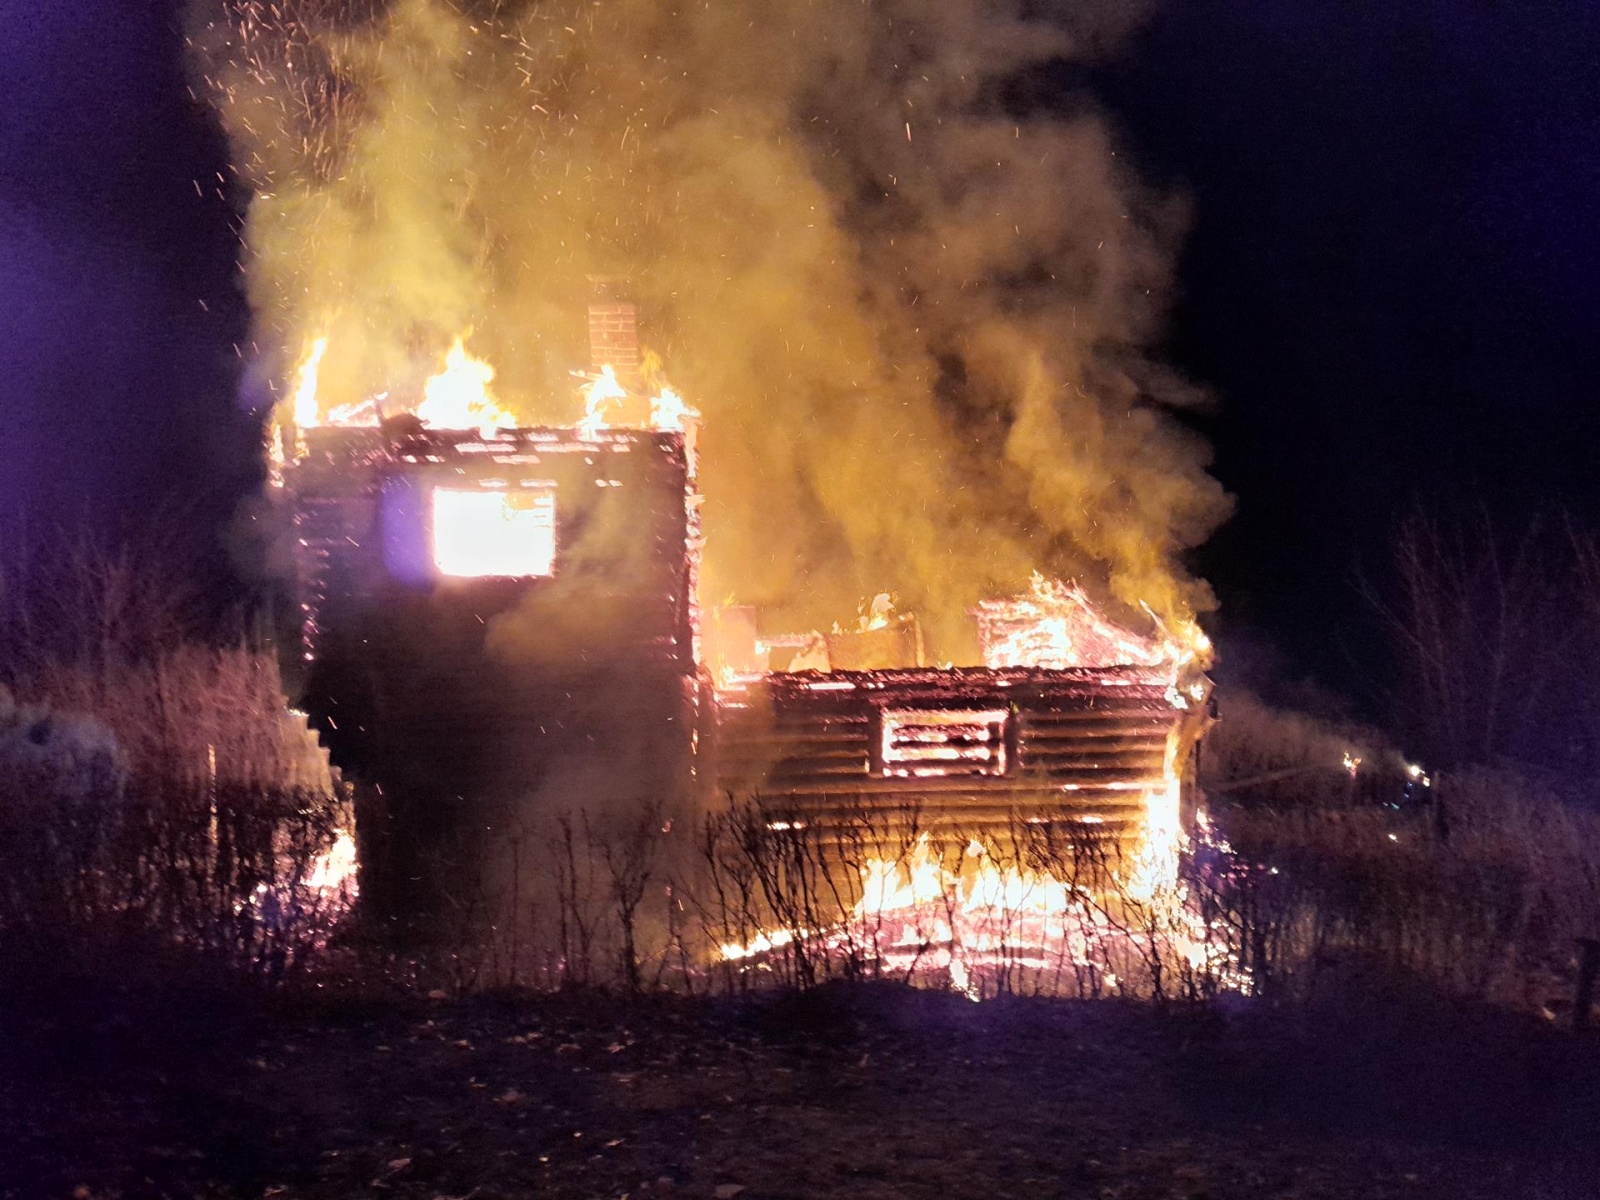 280124-Požár roubené chaty v rekreační oblasti u Berounky mezi obcemi Račice a Žloukovice.jpg